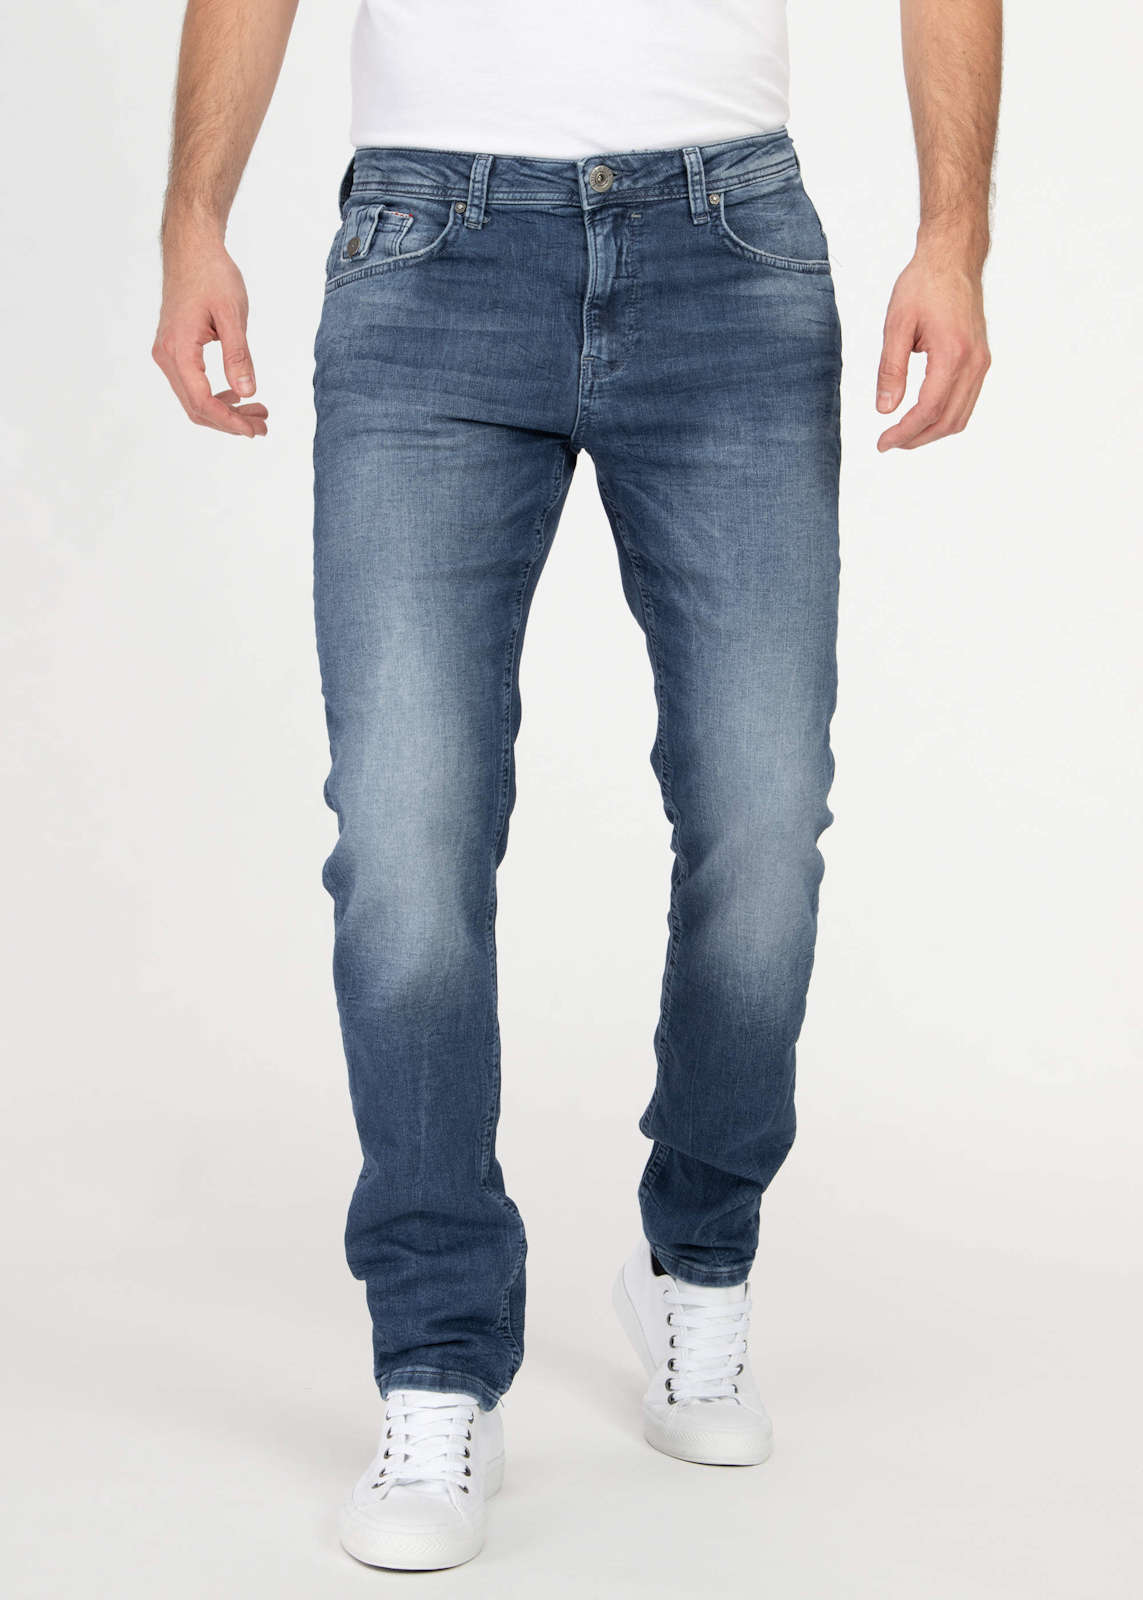 M.O.D Herren Straight Leg Jeans Hose Ricardo Regular Fit SP20-1002